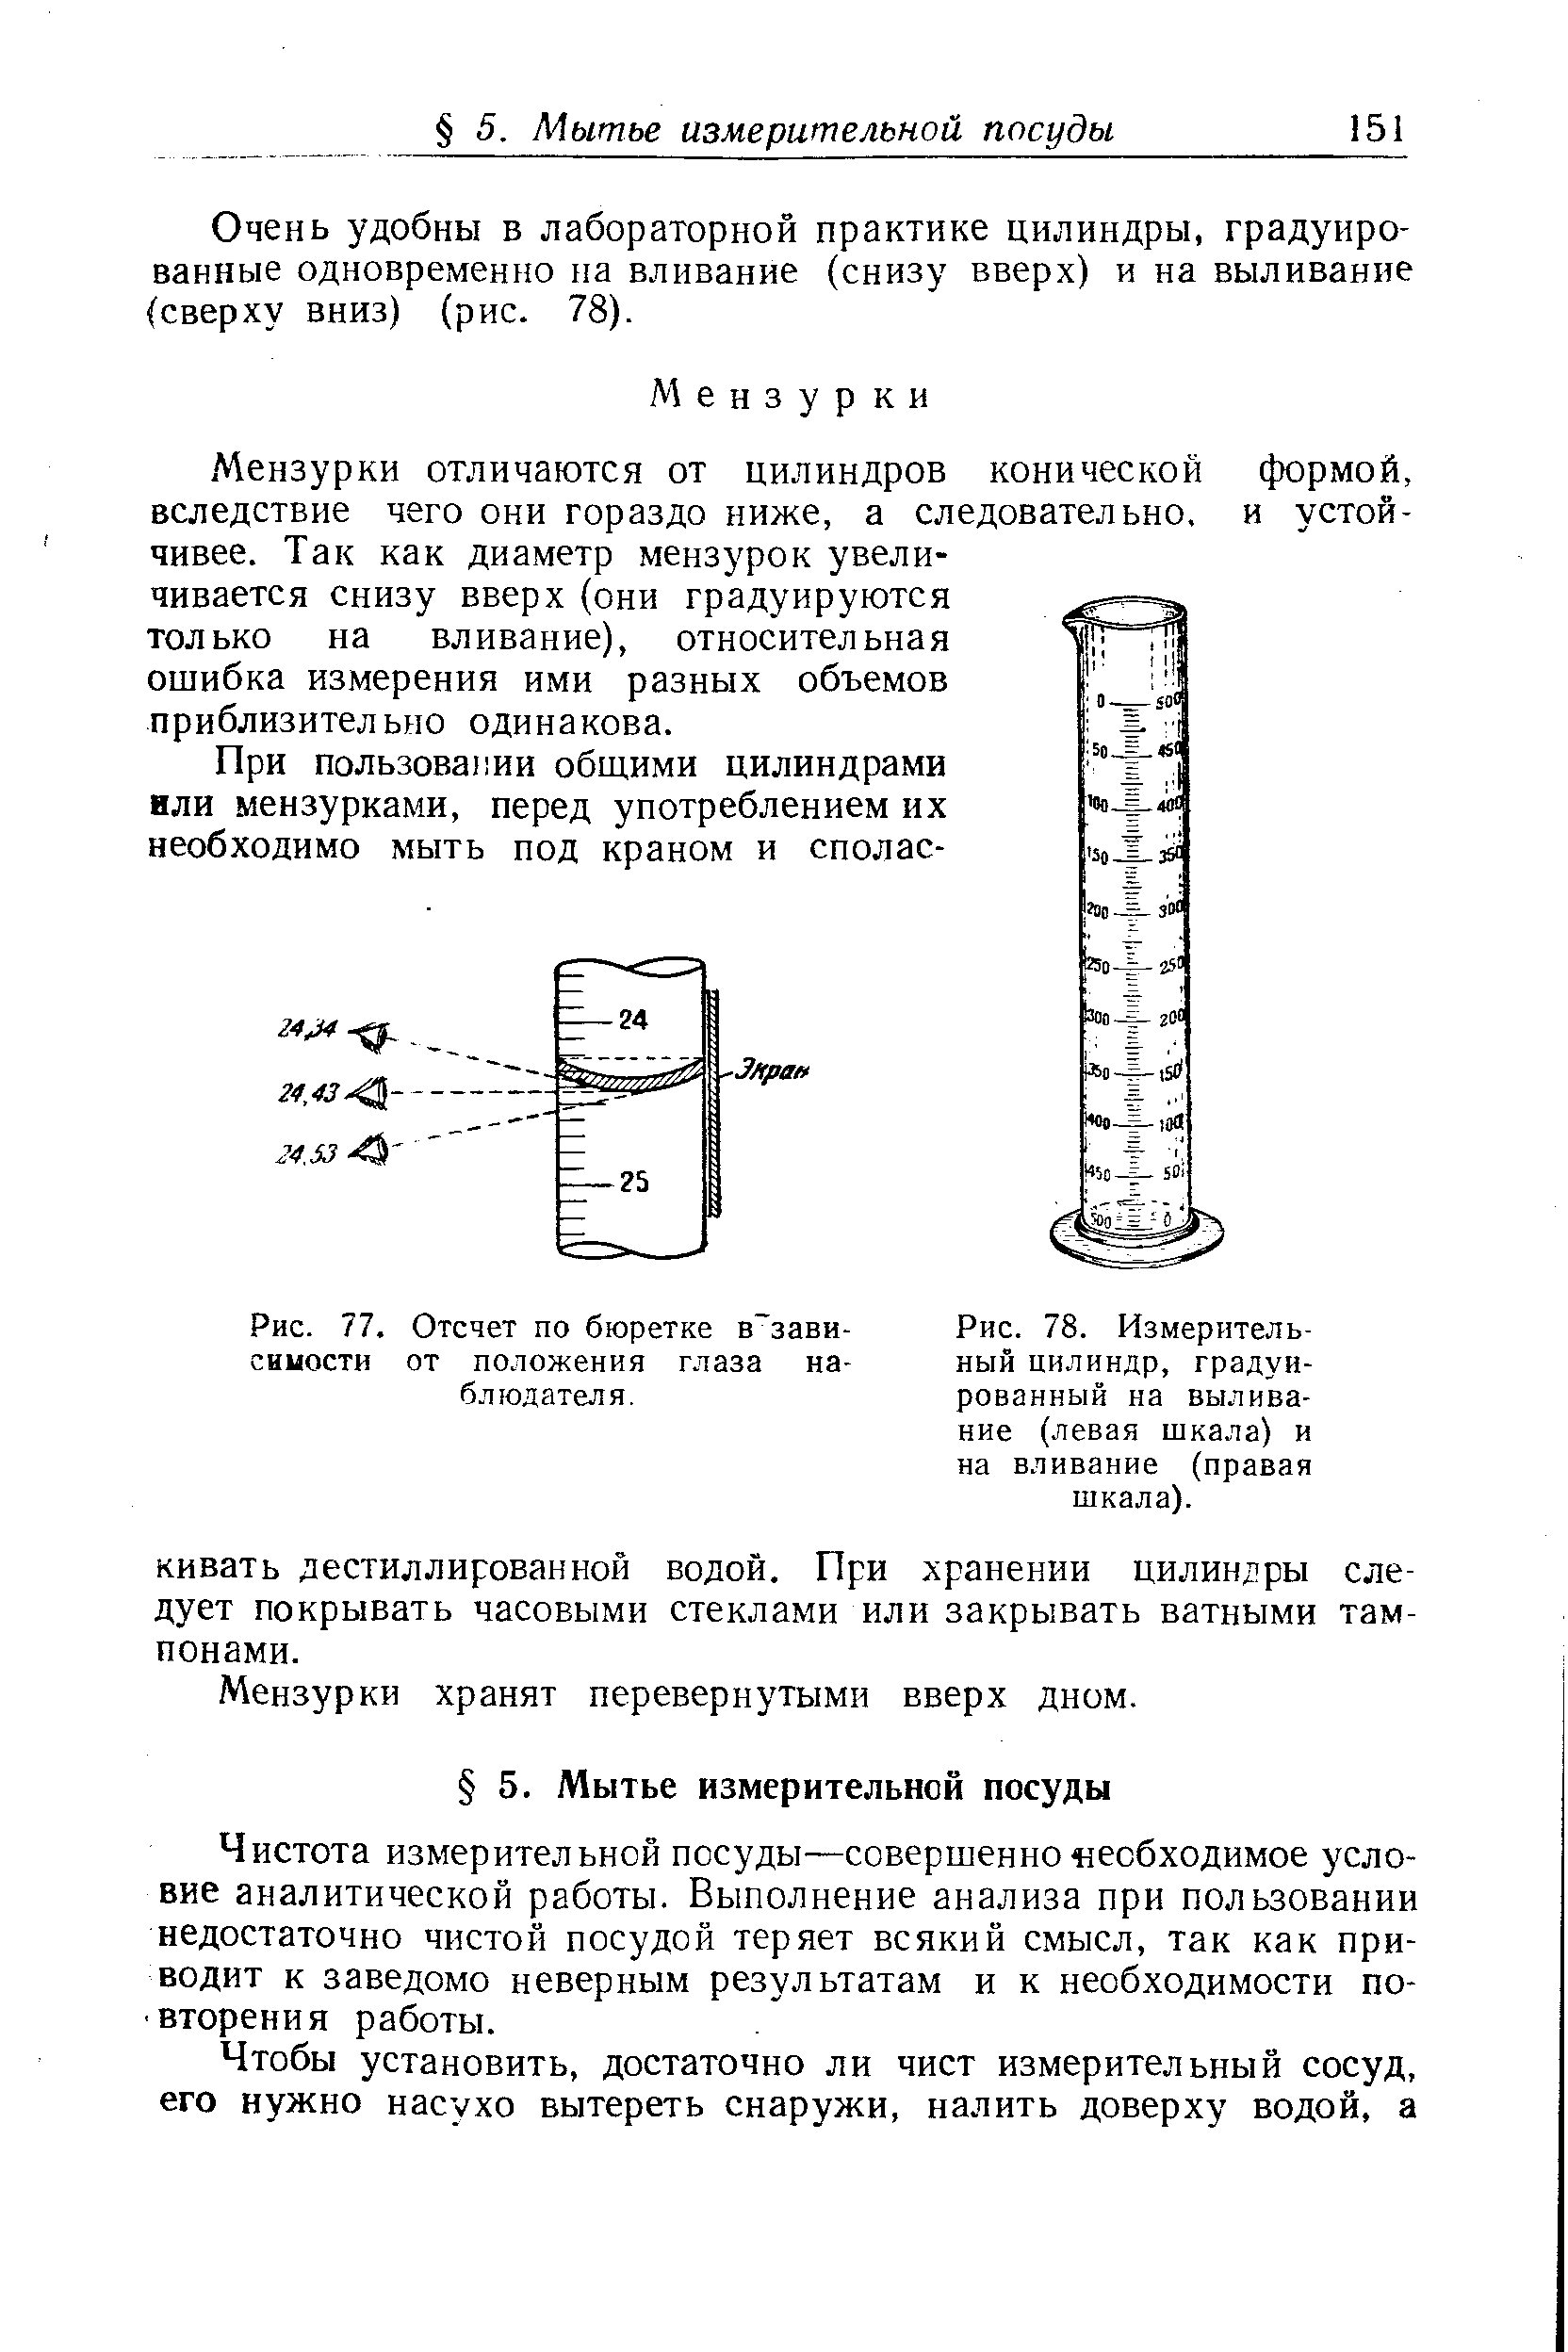 Очень удобны в лабораторной практике цилиндры, градуированные одновременно на вливание (снизу вверх) и на выливание (сверху вниз) (рис. 78).